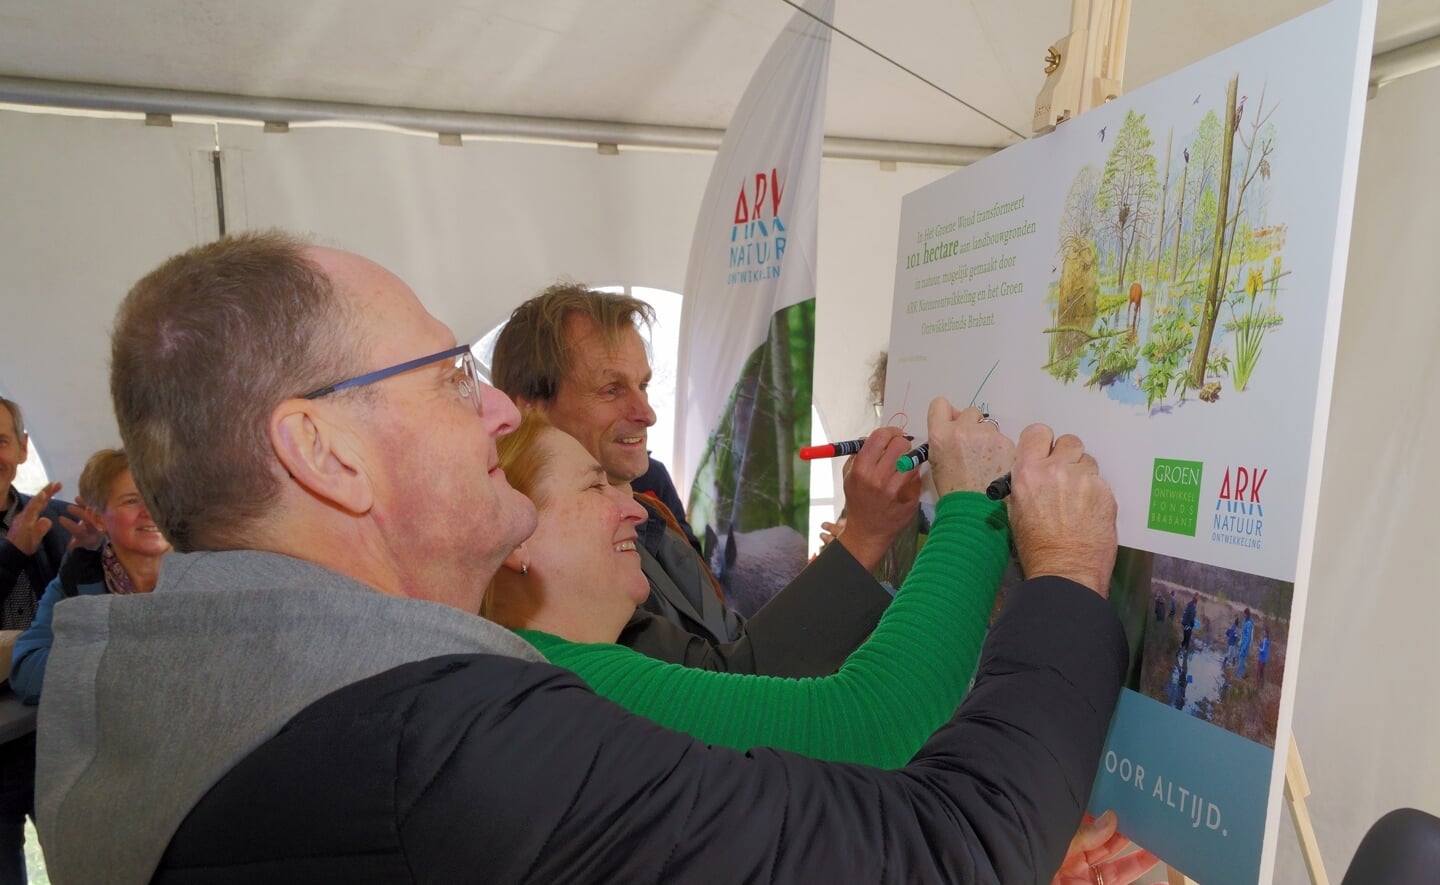 De directeuren van Ark en Groen Ontwikkelfonds Brabant zetten hun handtekeningen.